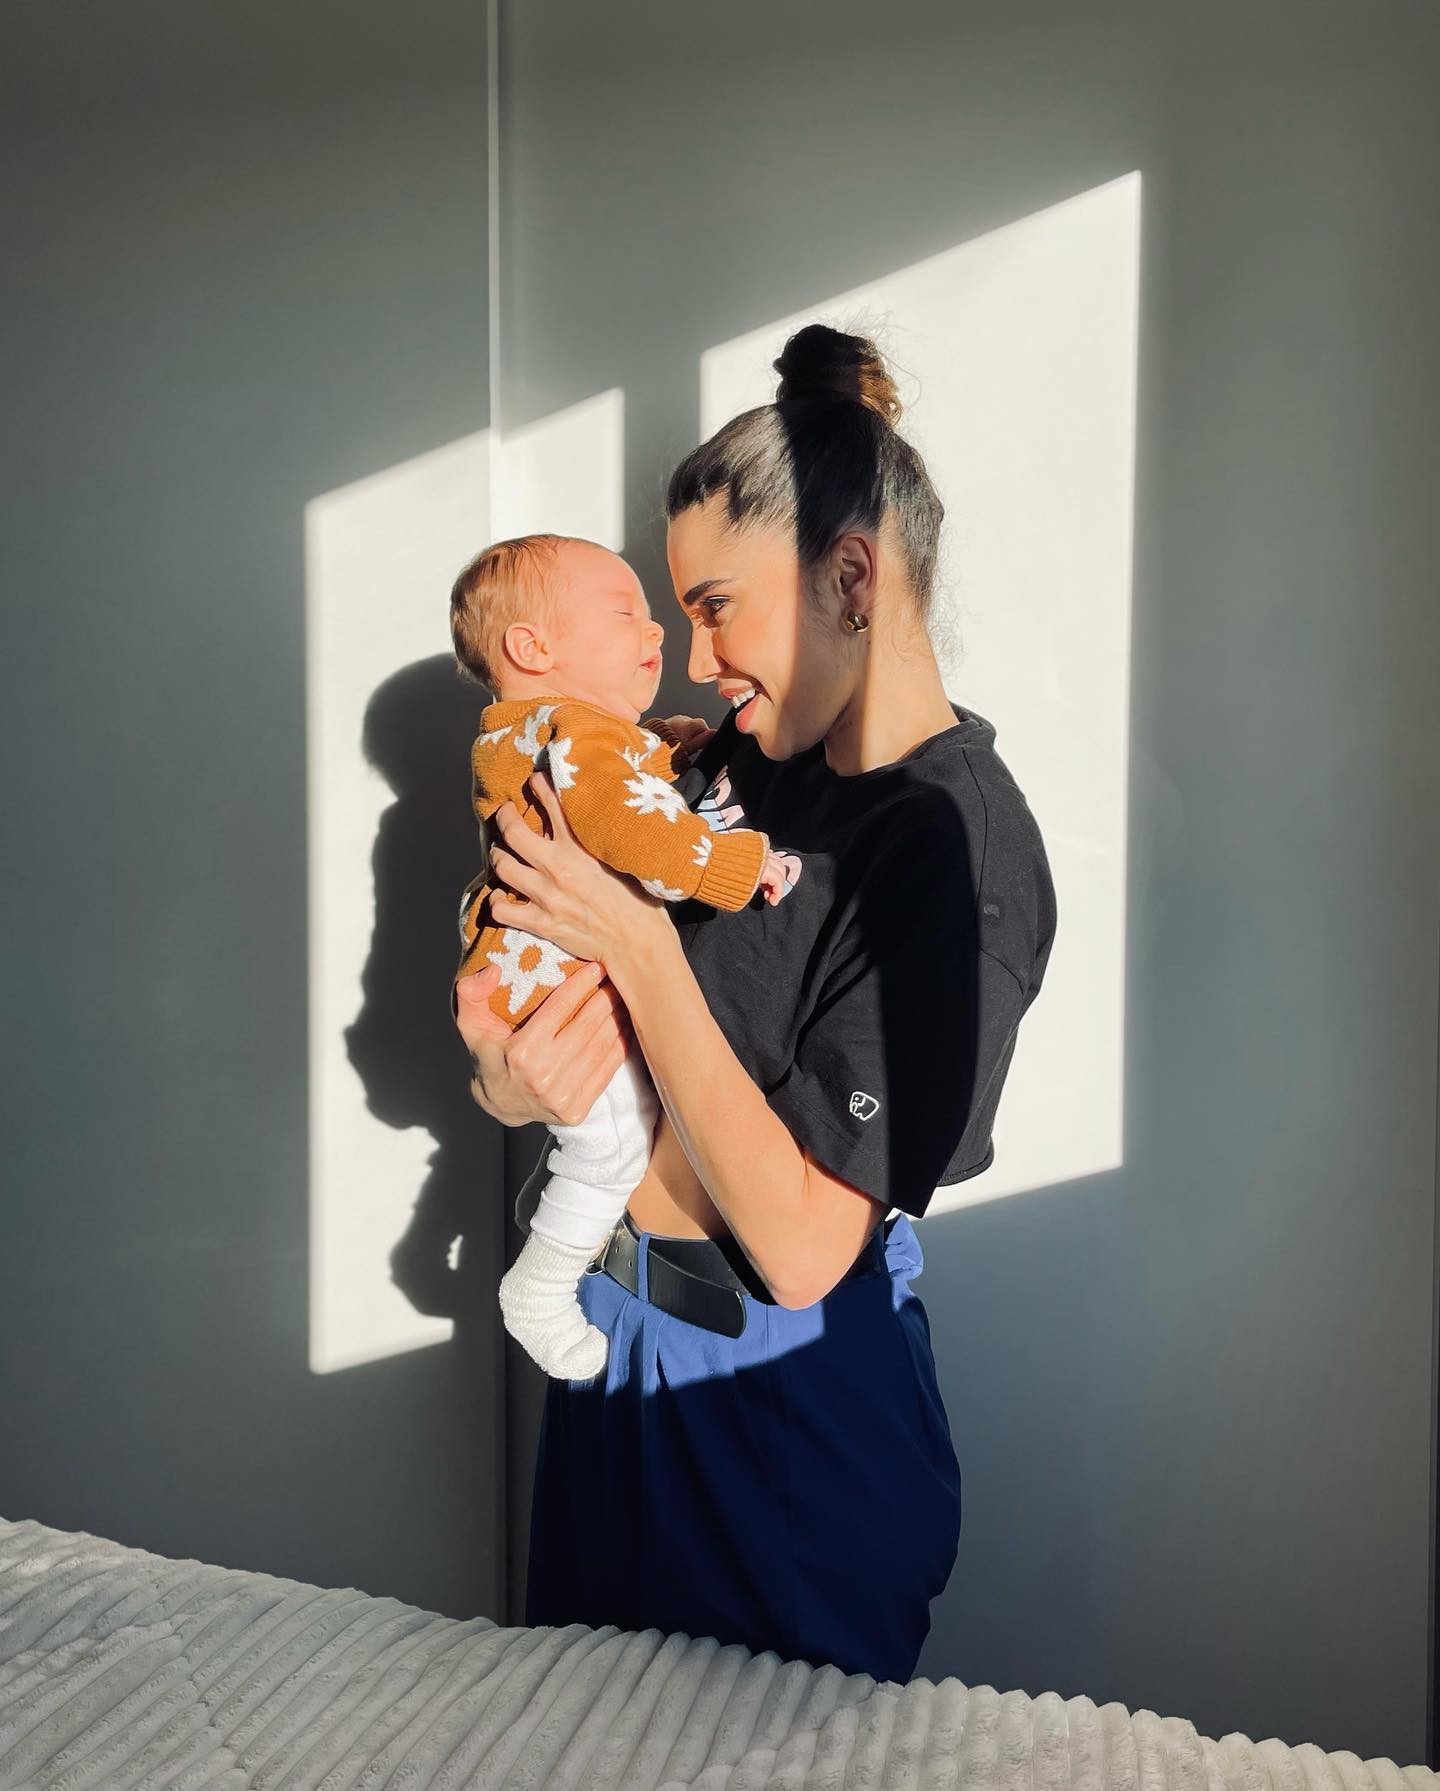 Paula Amorim posa com o filho, Theo, em clique no sol (Foto: Reprodução / Instagram)